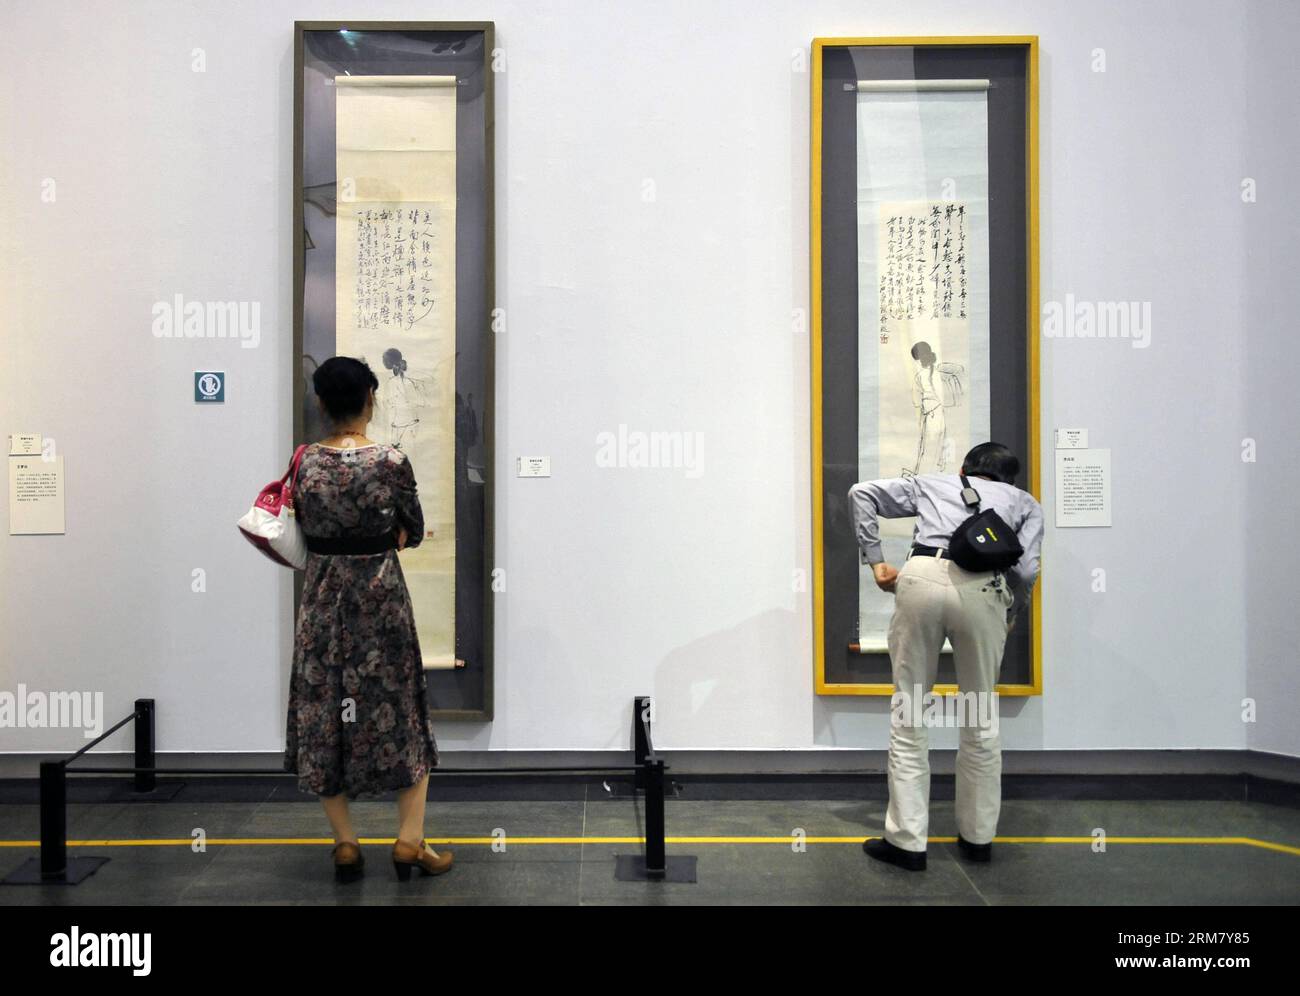 (140320) -- GUANGZHOU, 20 mars 2014 (Xinhua) -- les visiteurs voient les peintures du peintre chinois Wang Mengbai (L) et de Qi Baishi lors d'une exposition de la collection de maîtres de peinture chinois à Guangzhou, capitale de la province du Guangdong du sud de la Chine, le 20 mars 2014. (Xinhua/Liang Xu) (wf) CHINA-GUANGZHOU-ART (CN) PUBLICATIONxNOTxINxCHN Guangzhou Mars 20 2014 visiteurs XINHUA Voir les peintures du peintre chinois Wang l et de Qi Baishi lors de l'exposition de la collection des maîtres de peinture chinois à Guangzhou capitale du sud de la Chine province du Guangdong Mars 20 2014 XINHUA Liang Xu WF Chine Gu Chine Gu Banque D'Images